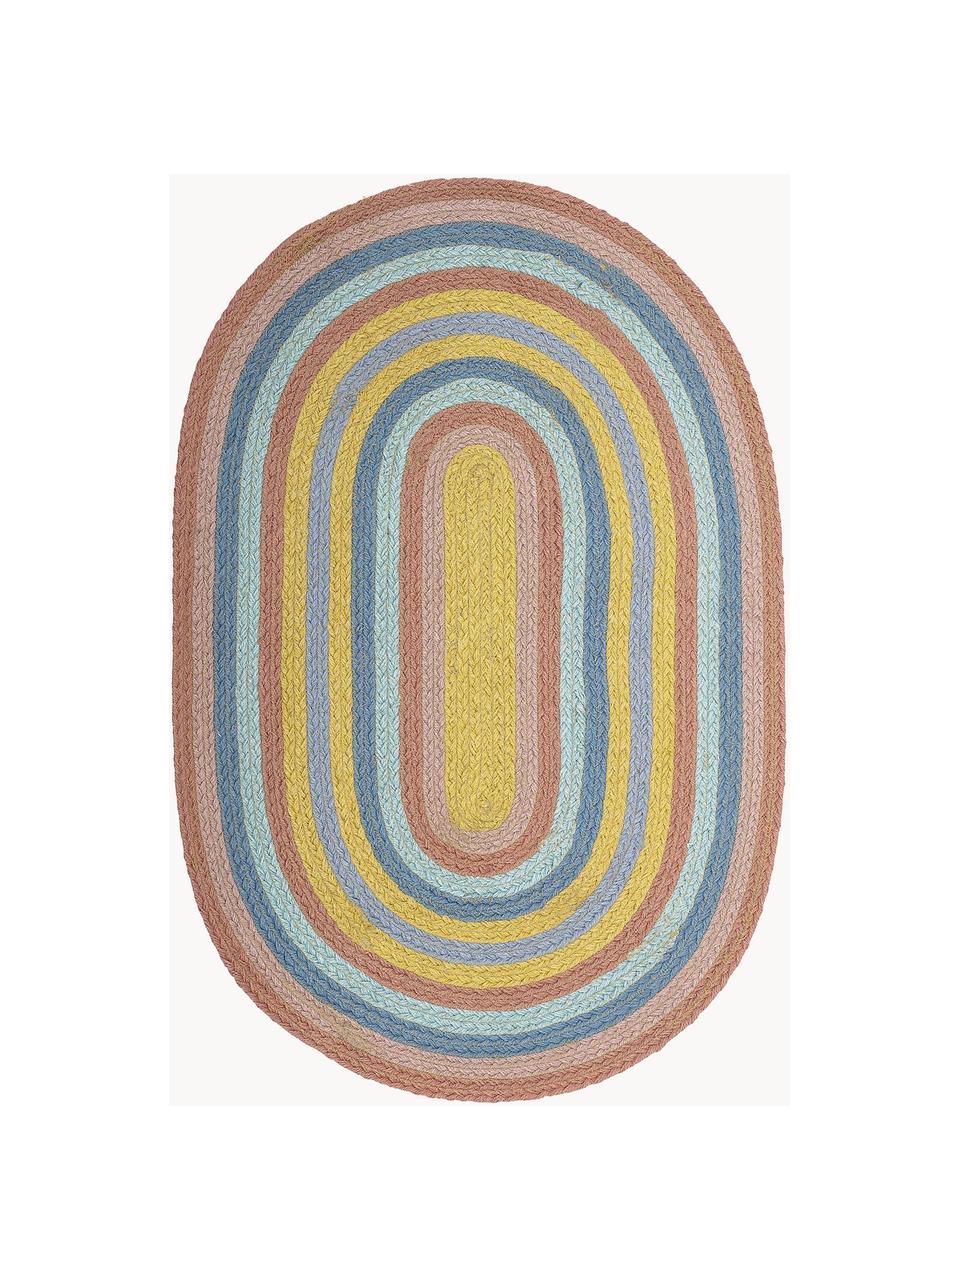 Ovale vloerkleed Ralia van jute, 100% jute, Meerkleurig, L 75 x B 50 cm